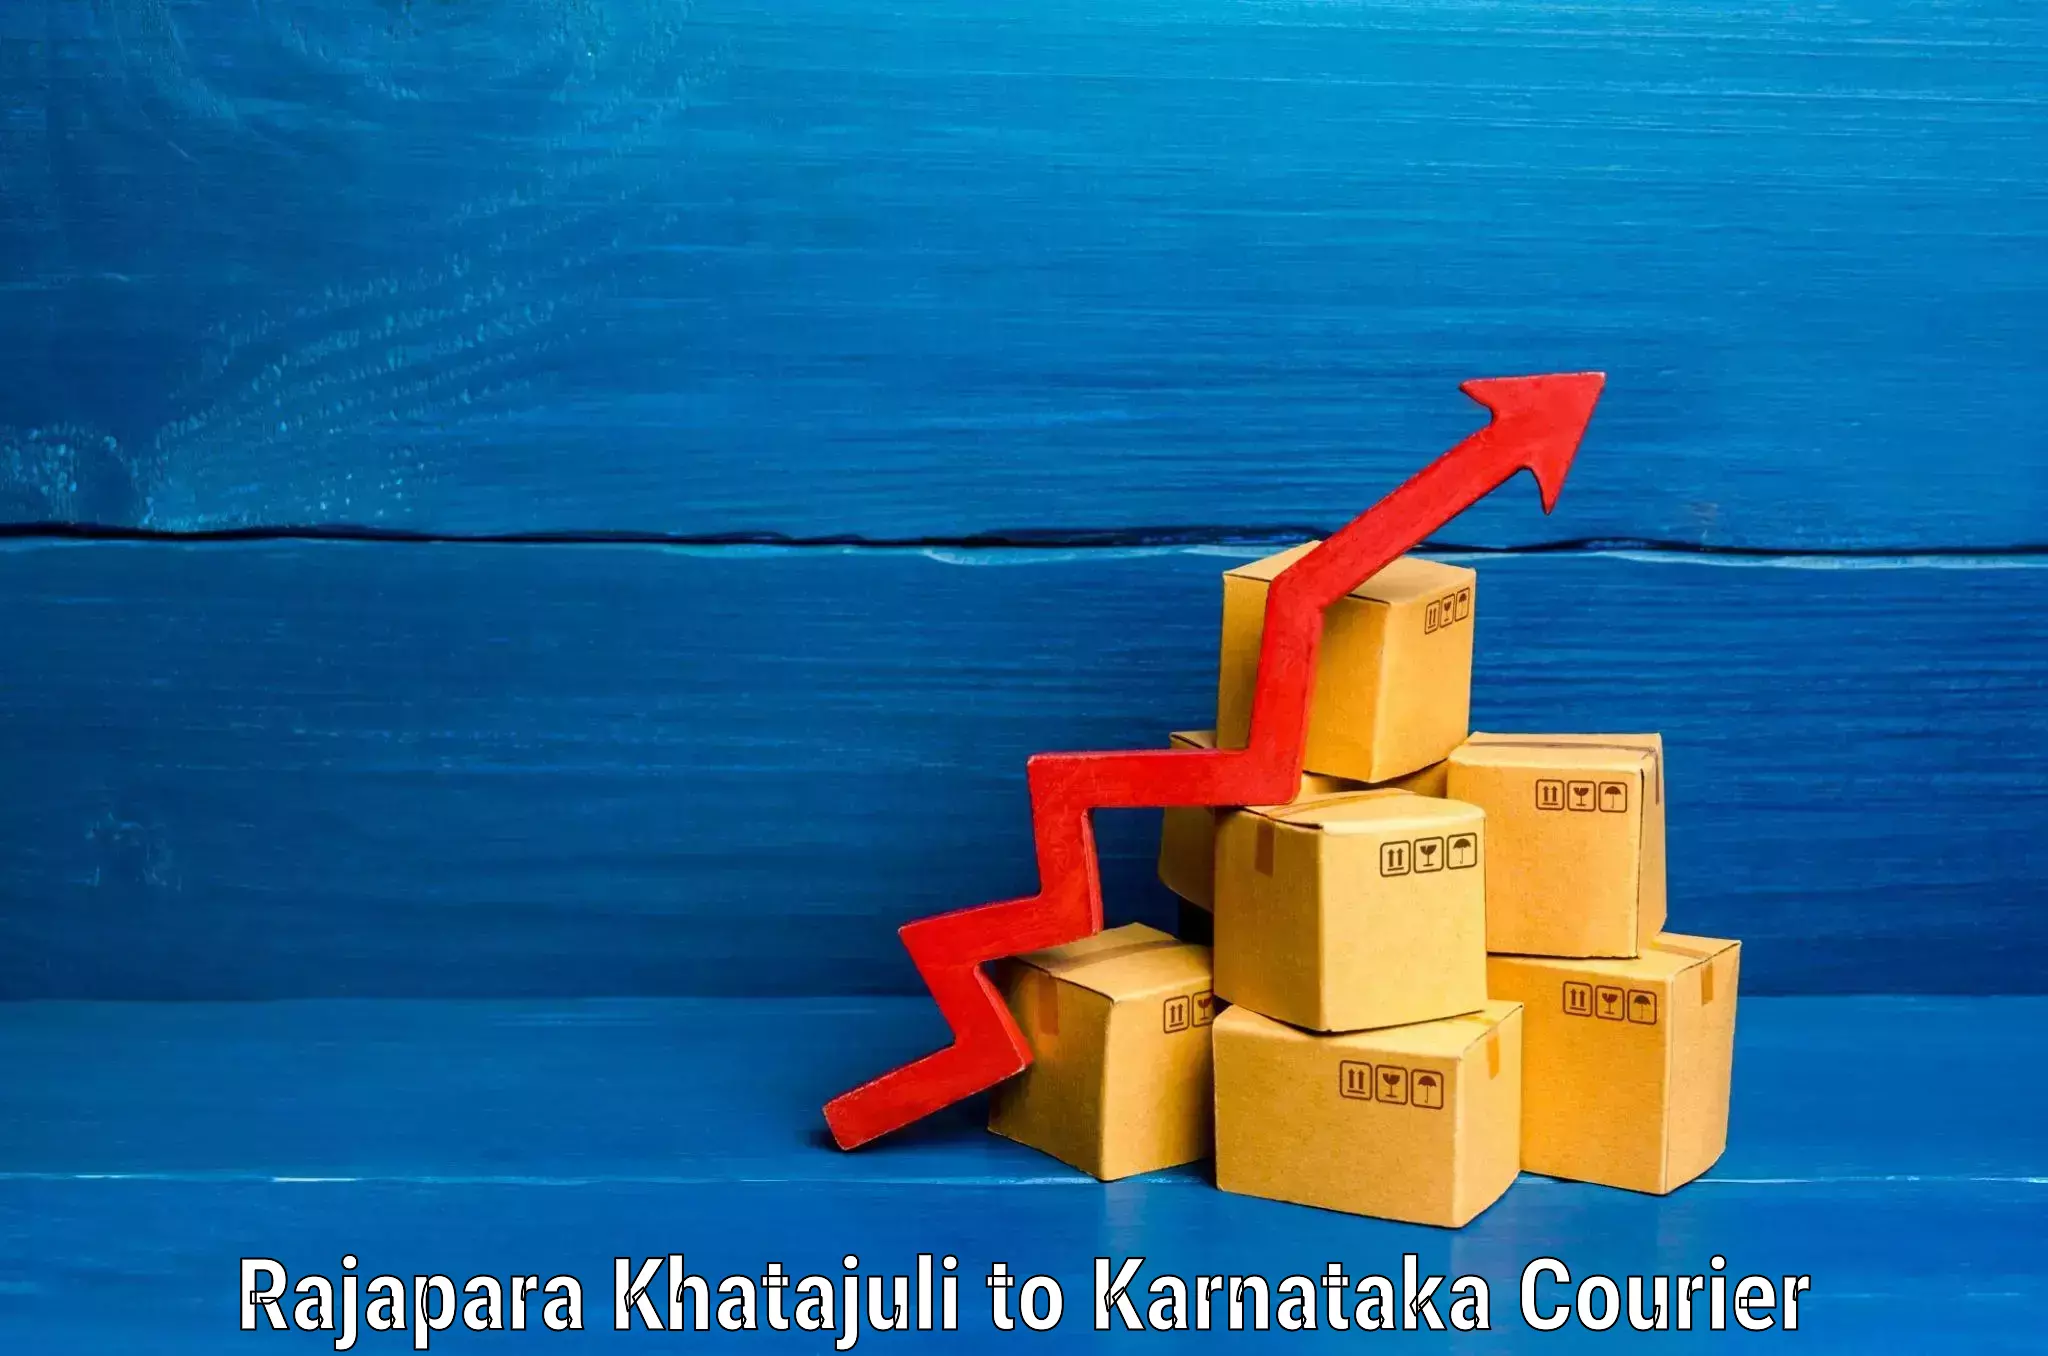 Nationwide luggage courier Rajapara Khatajuli to Mangalore Port